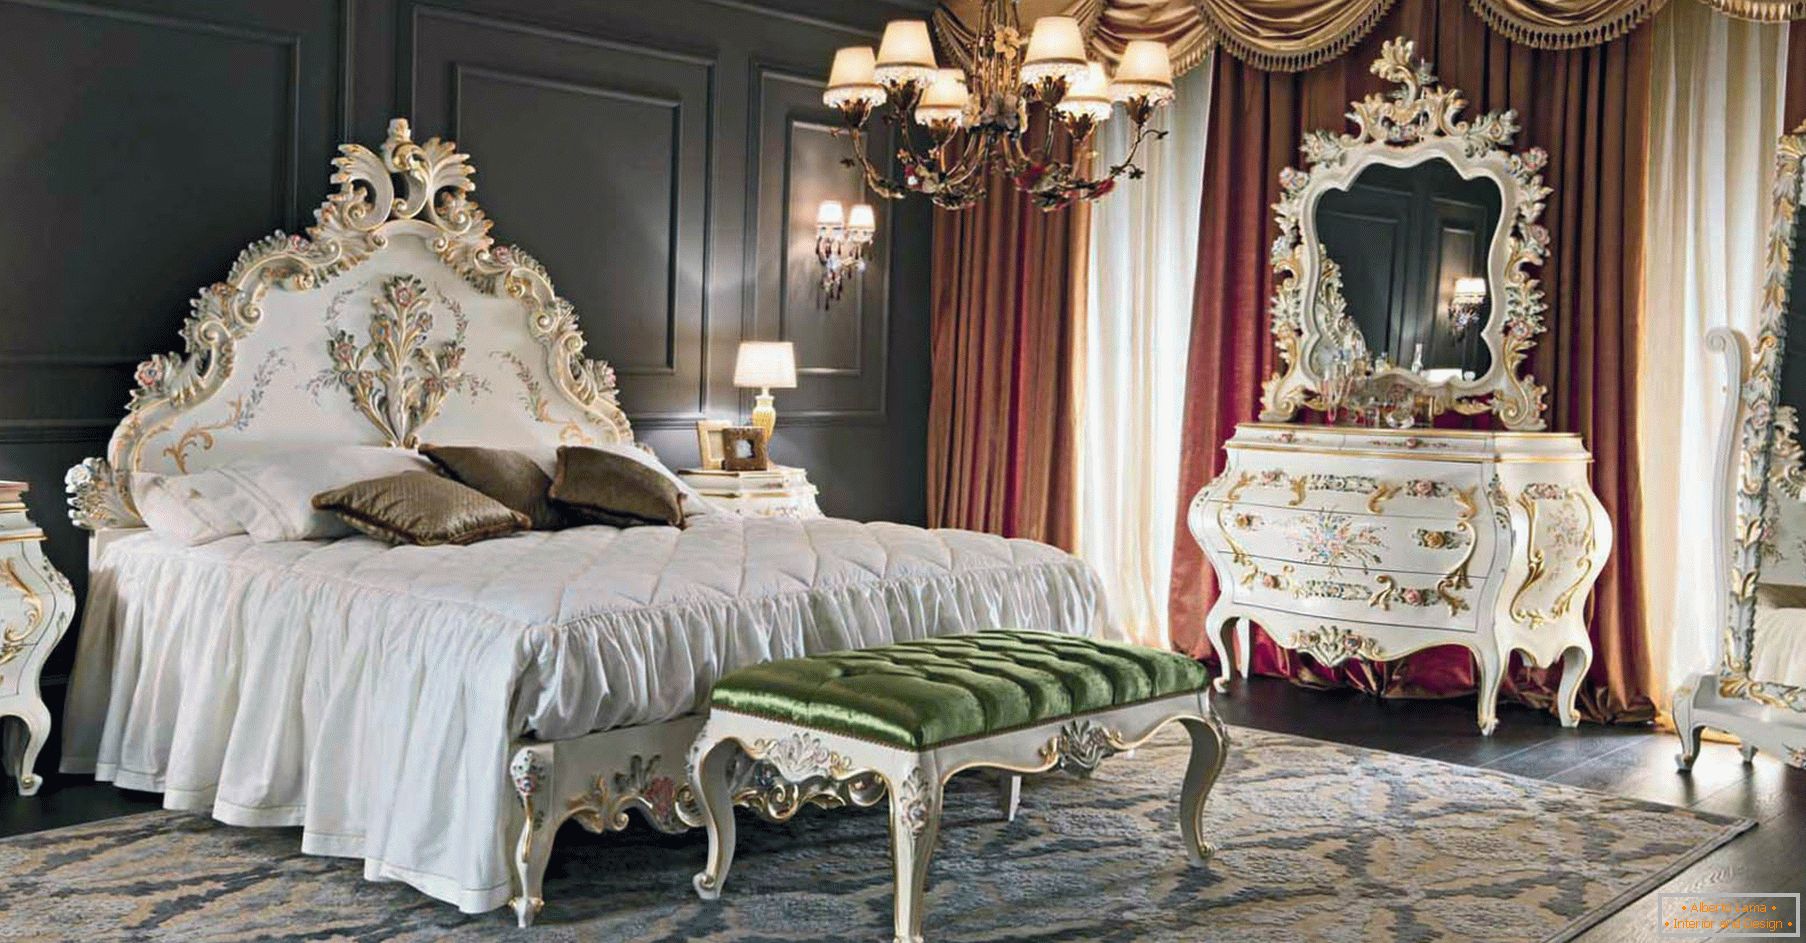 Pentru a decora dormitorul, a fost folosit un contrast de culoare maro inchis, auriu, rosu si alb. Mobilierul este ales în funcție de stilul barocului.